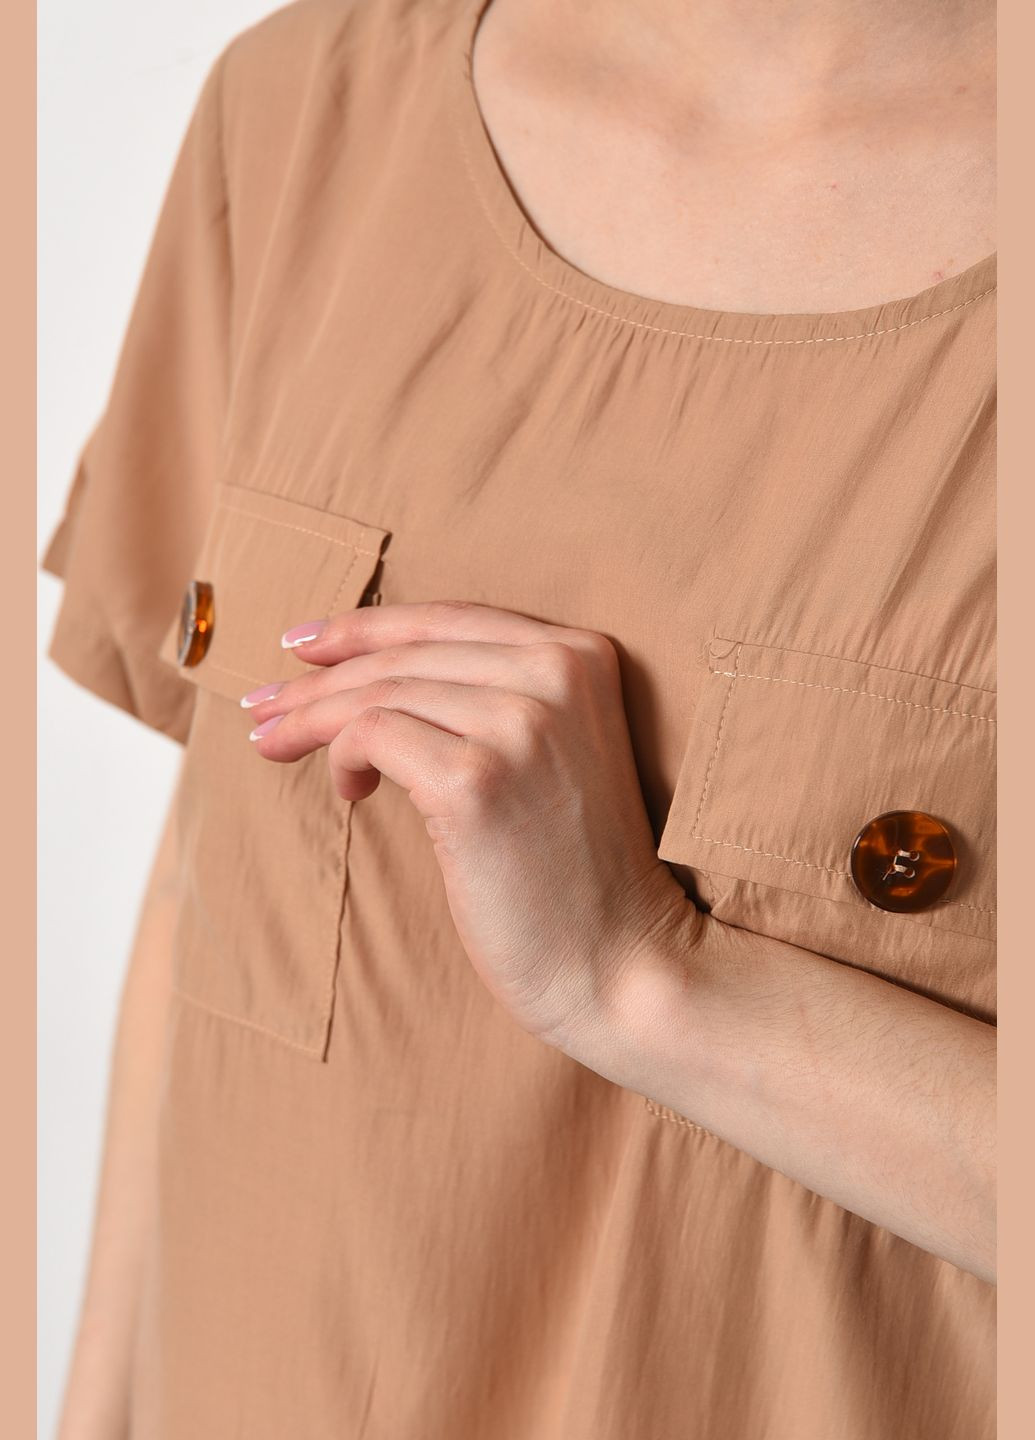 Бежевая блуза женская с коротким рукавом бежевого цвета с баской Let's Shop